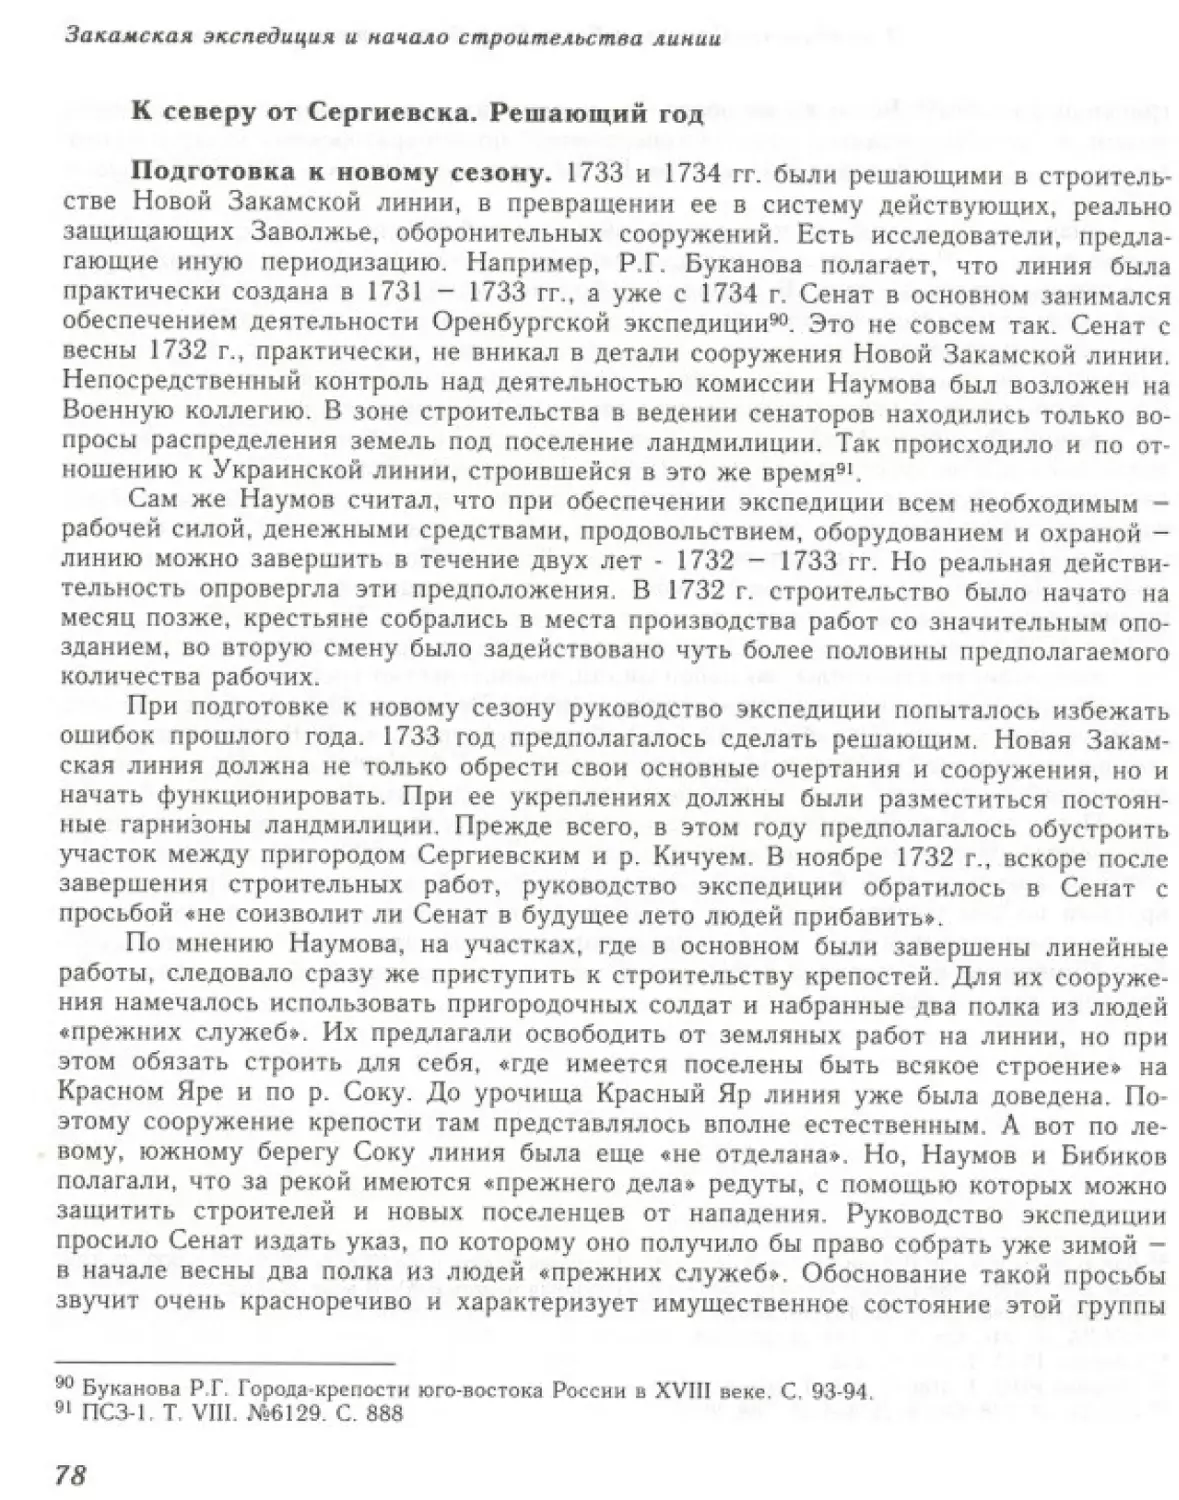 Вал0080.pdf (p.79)